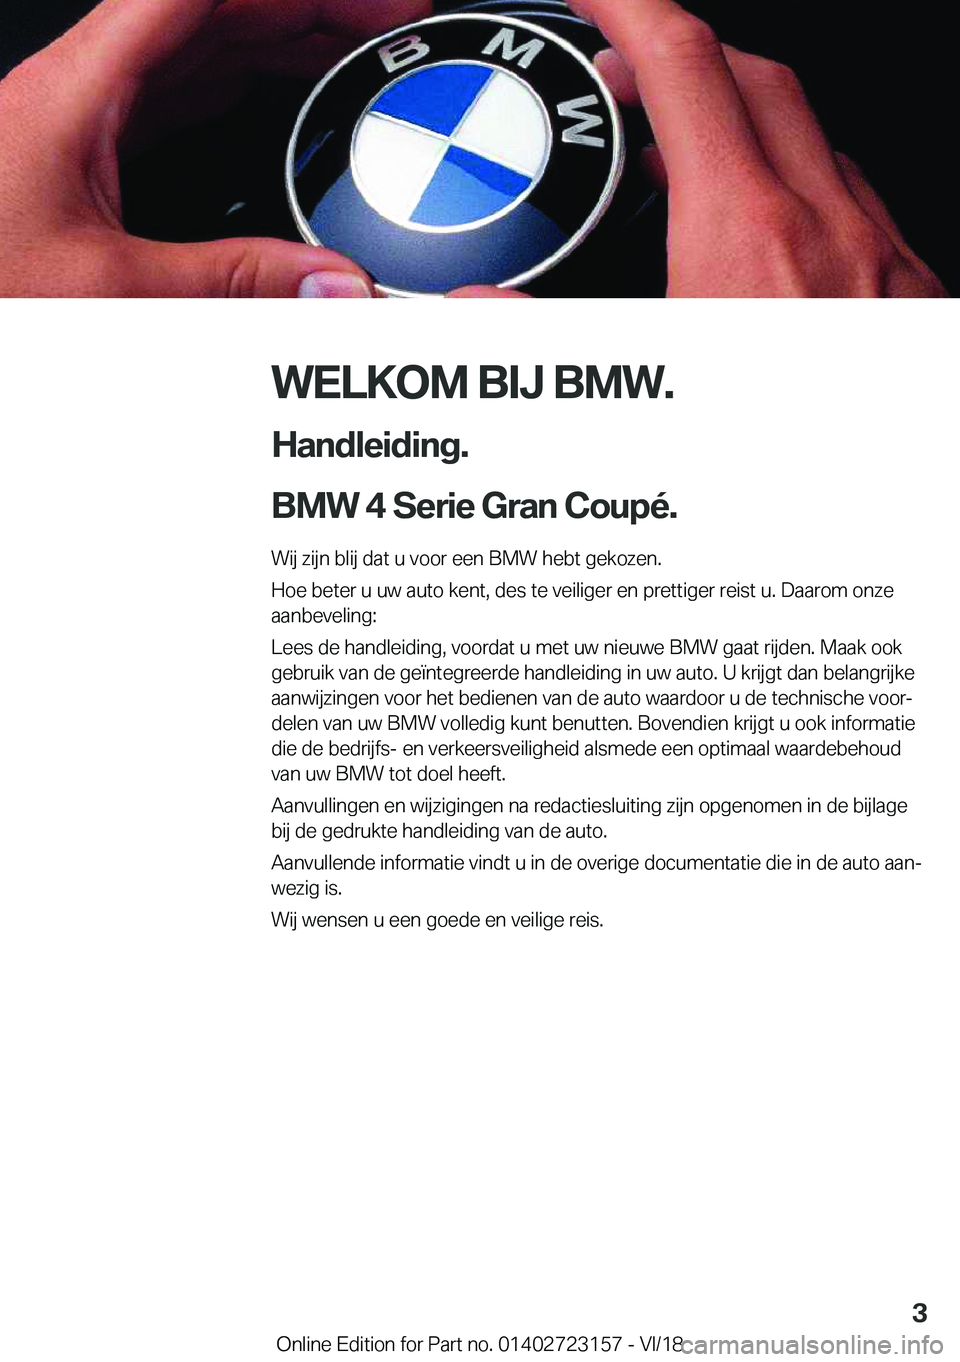 BMW 4 SERIES COUPE 2019  Instructieboekjes (in Dutch) �W�E�L�K�O�M��B�I�J��B�M�W�.
�H�a�n�d�l�e�i�d�i�n�g�.
�B�M�W��4��S�e�r�i�e��G�r�a�n��C�o�u�p�